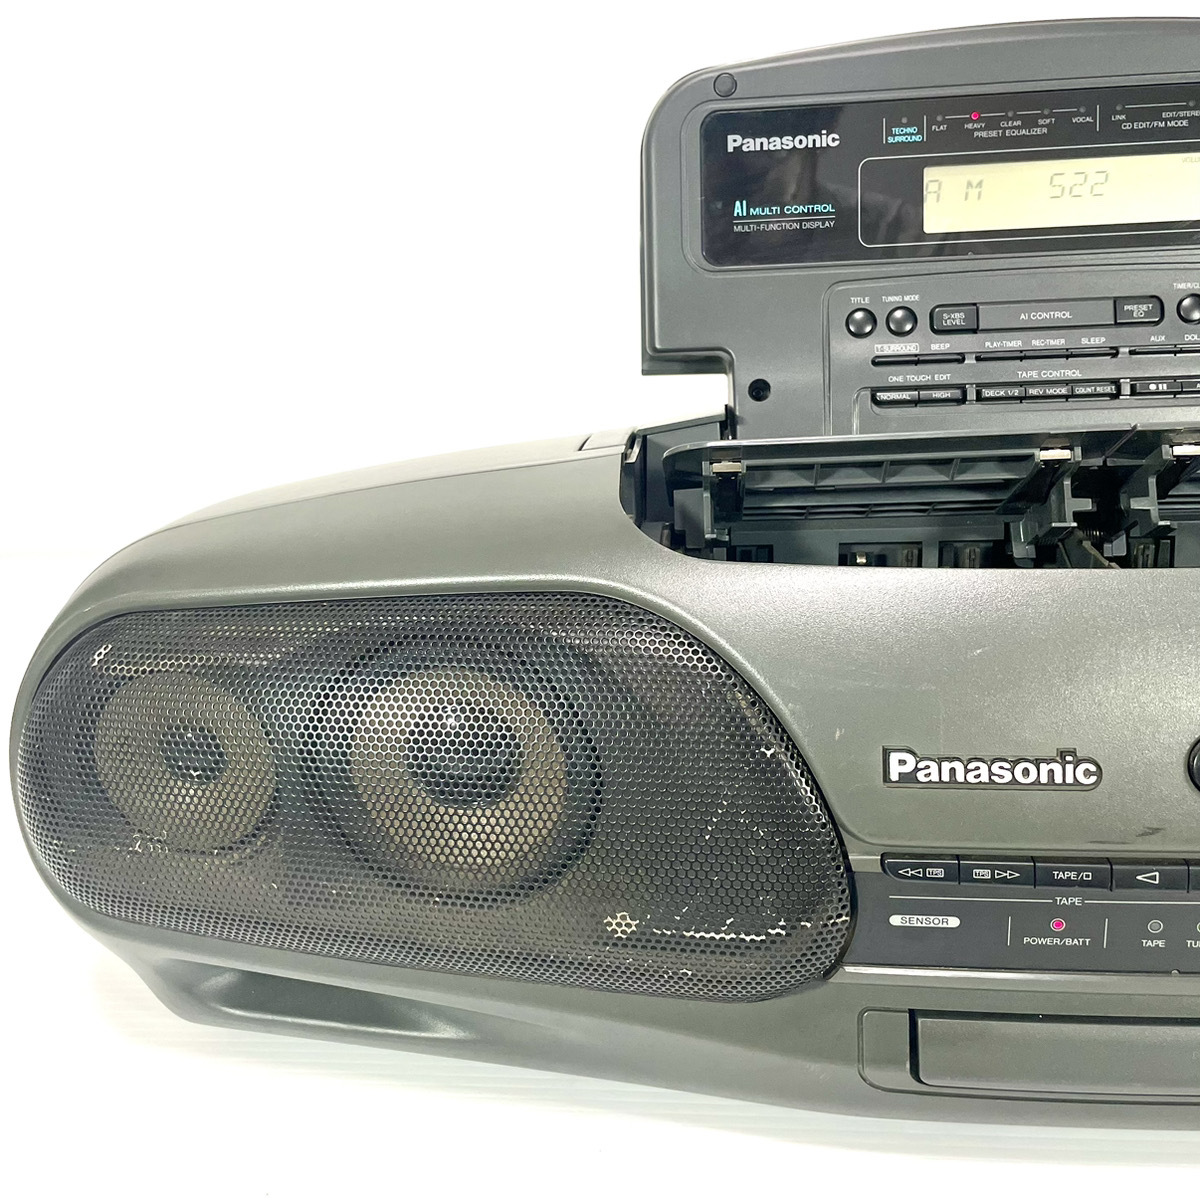 【稀少銘機/動作美品】Panasonic パナソニック RX-DT707 バブルラジカセ コブラトップ CD TAPE AM FM RX-DT909 の兄弟機_画像2